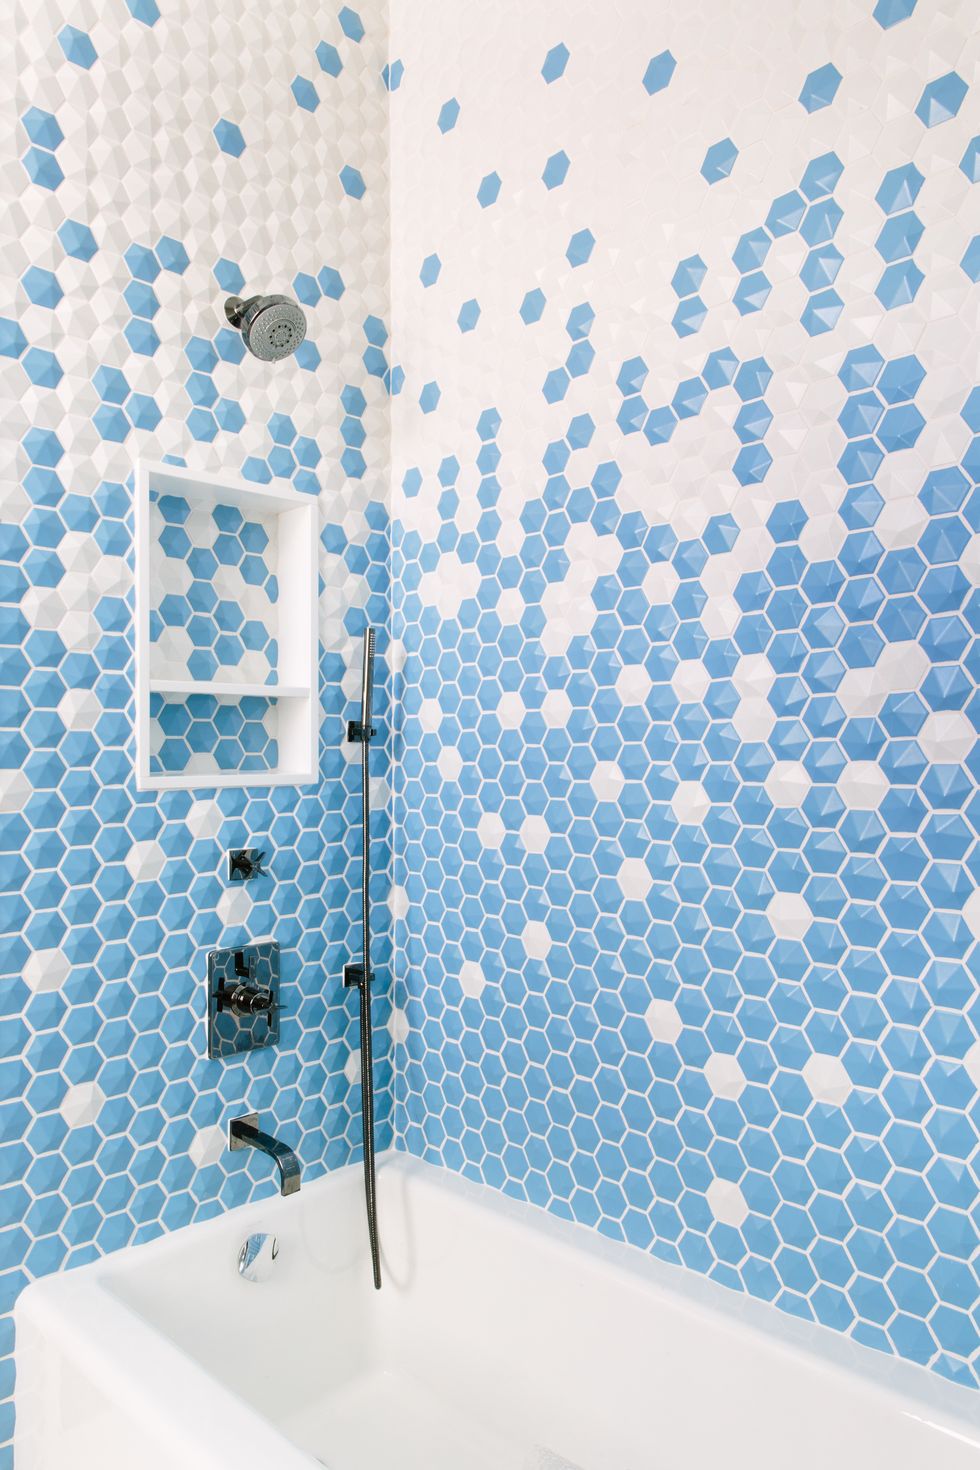 hình ảnh phòng tắm ốp lát gạch lục giác màu trắng kết hợp xanh dương